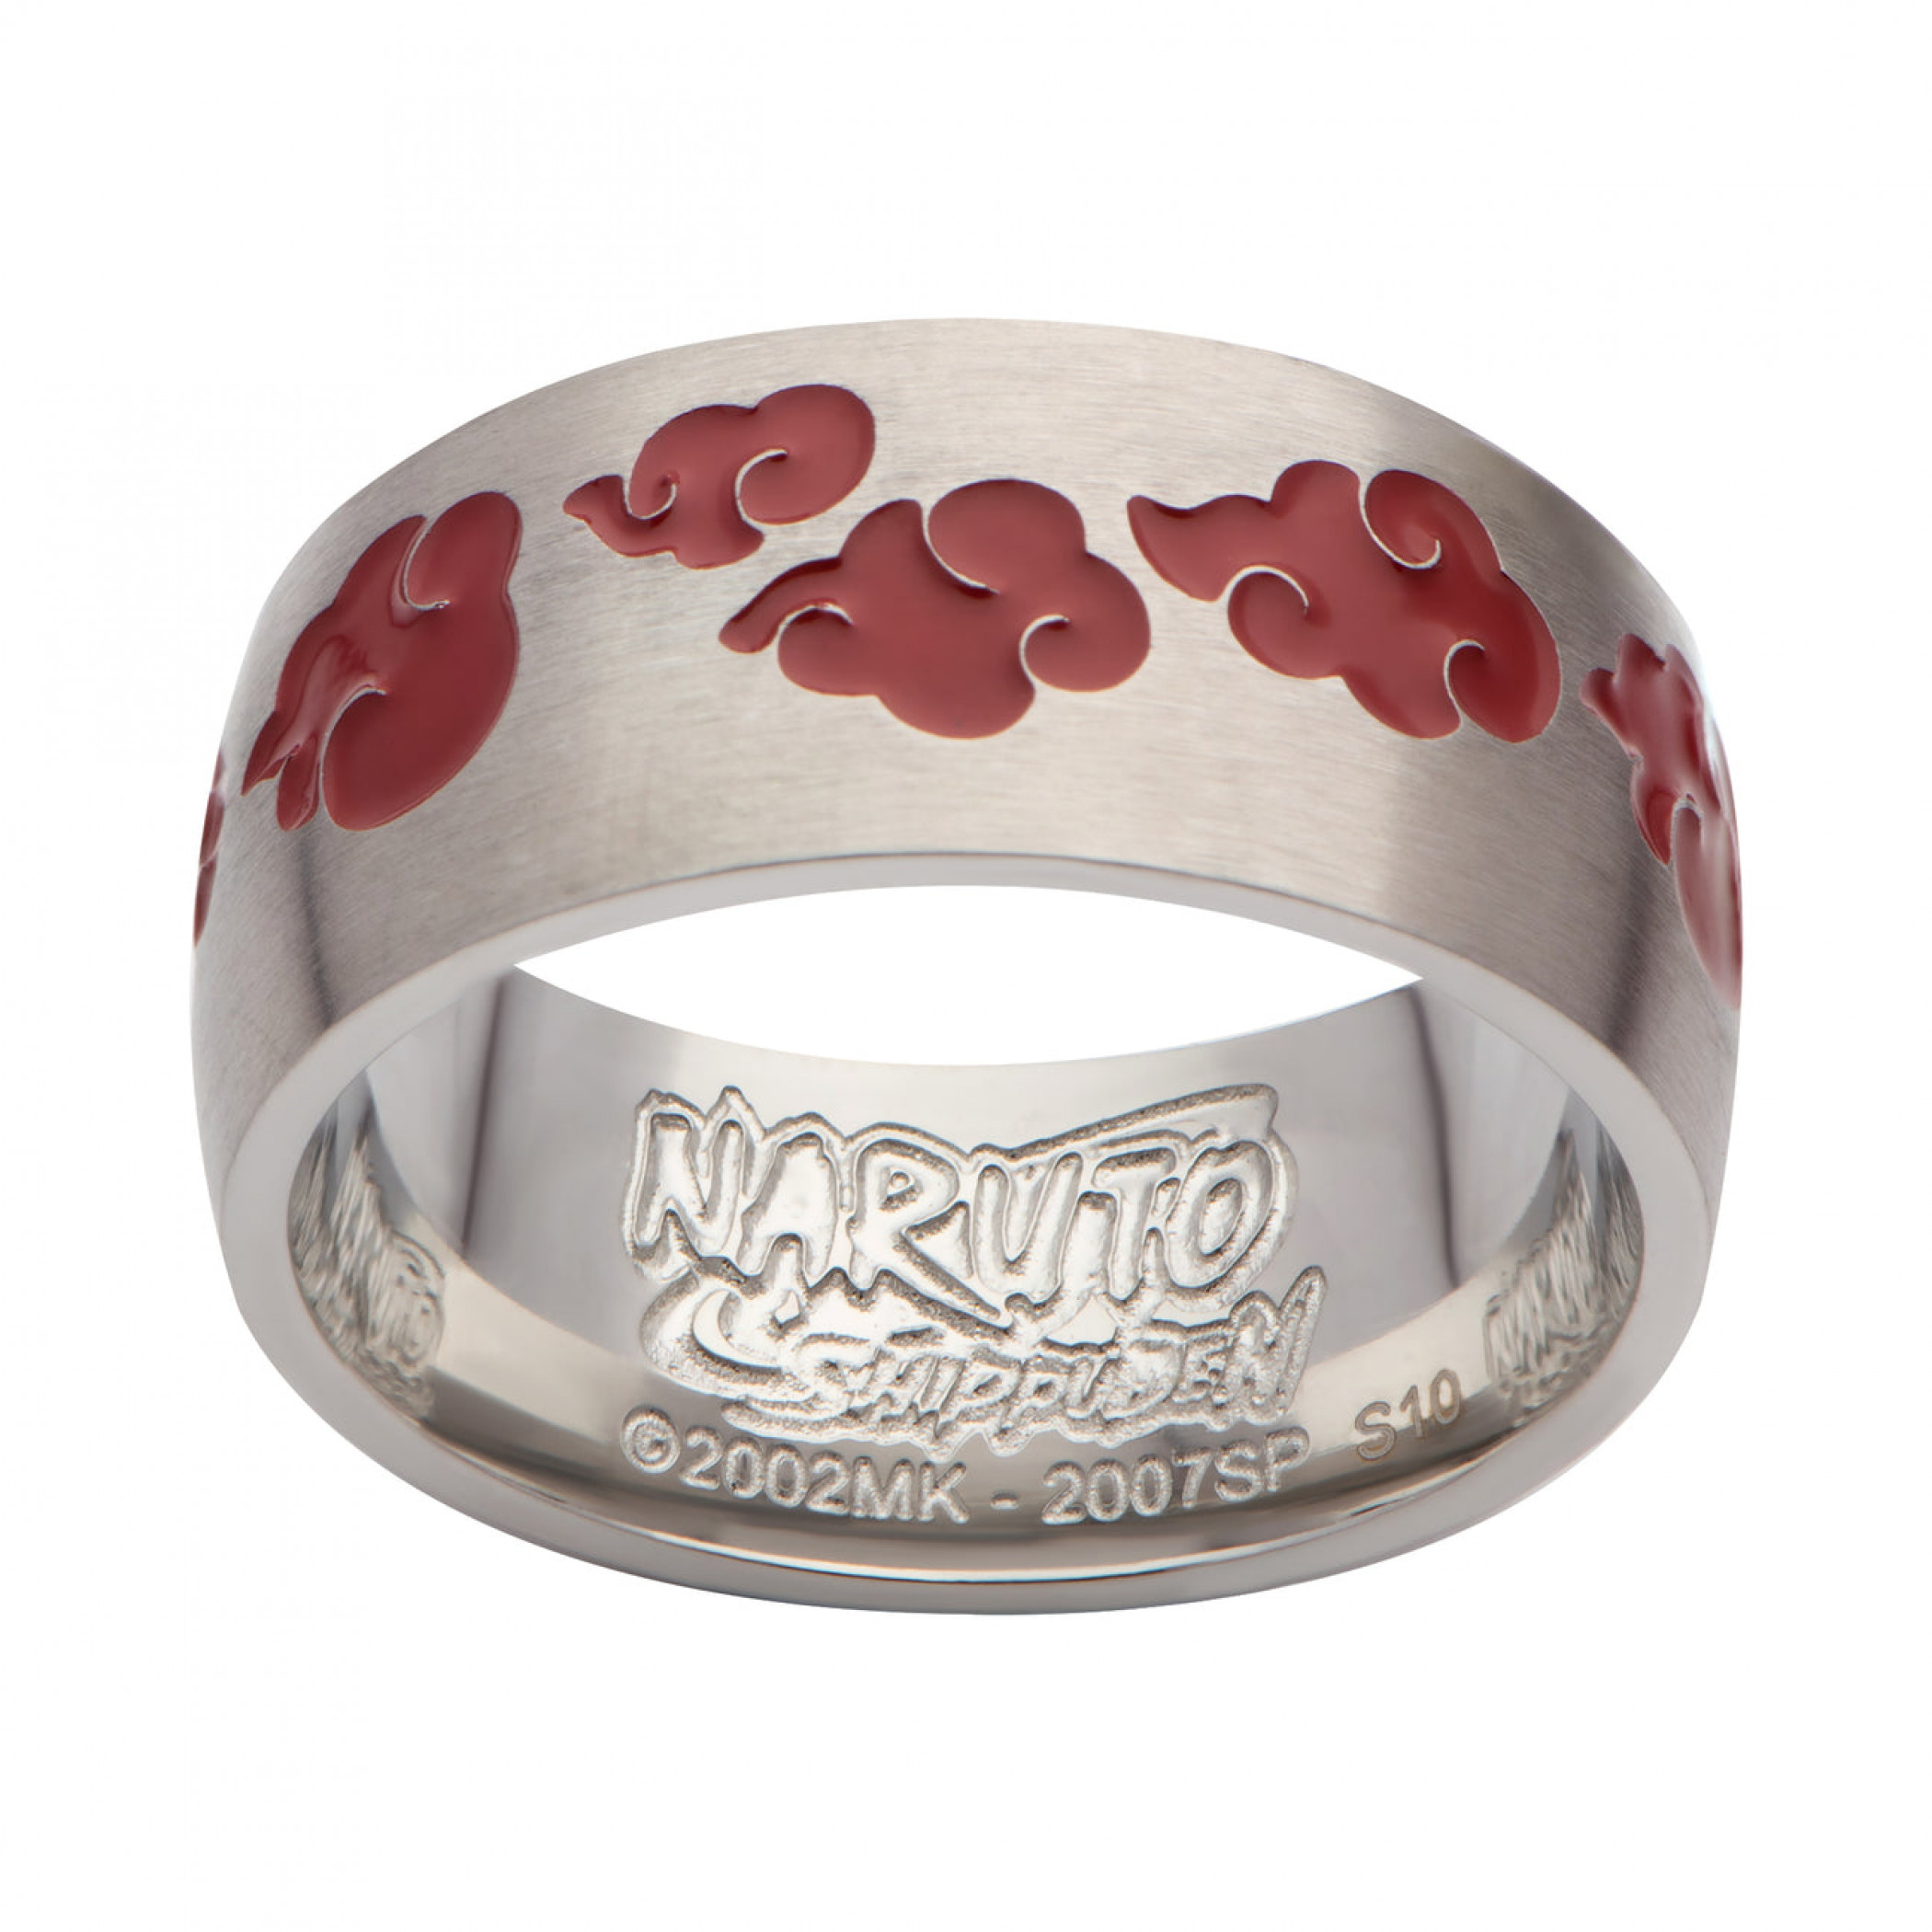 Naruto Akatsuki Logo Ring